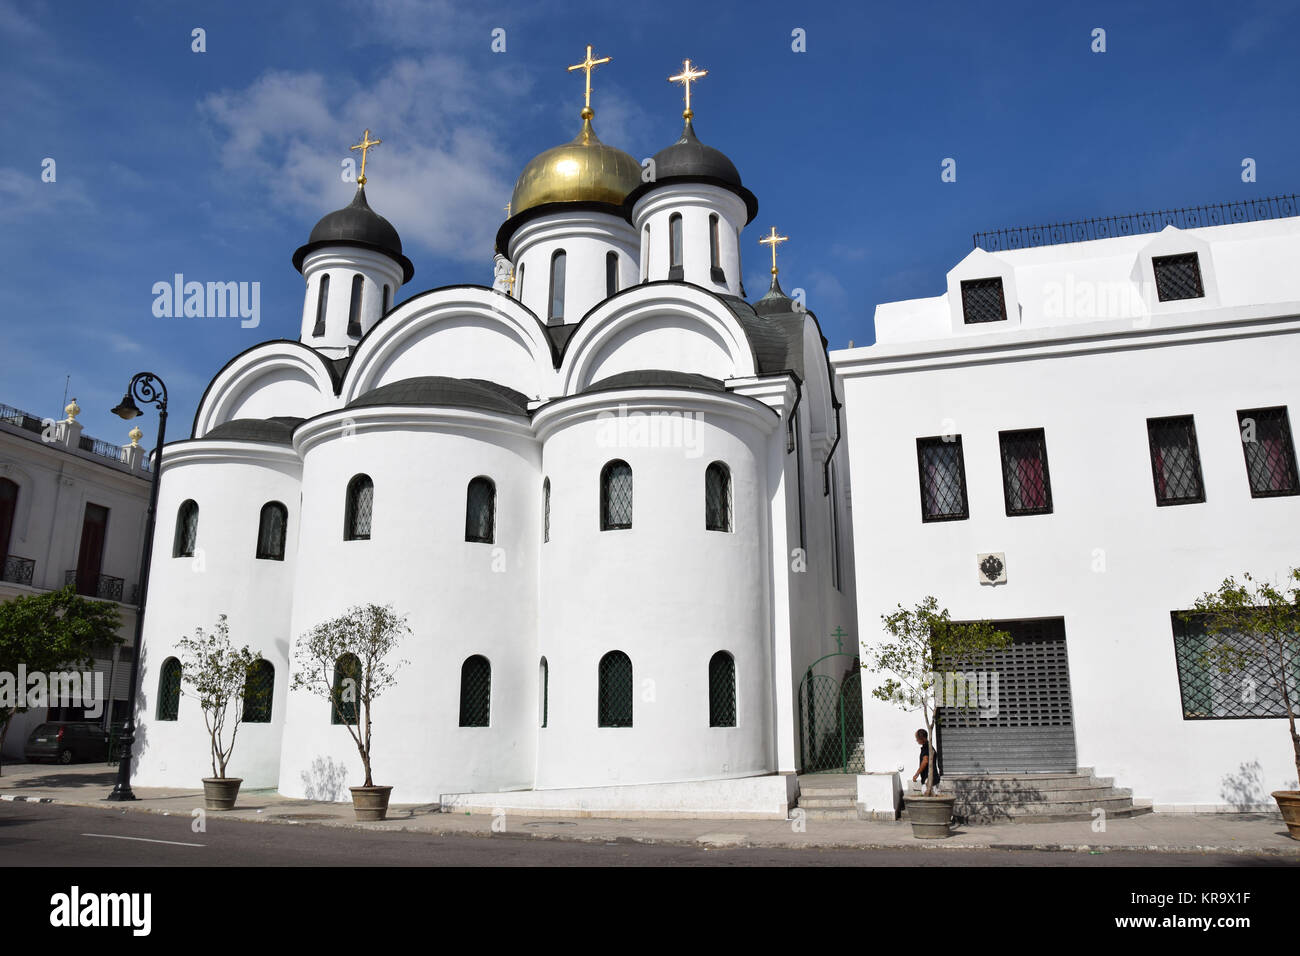 Eglise orthodoxe russe à la Havane Banque D'Images